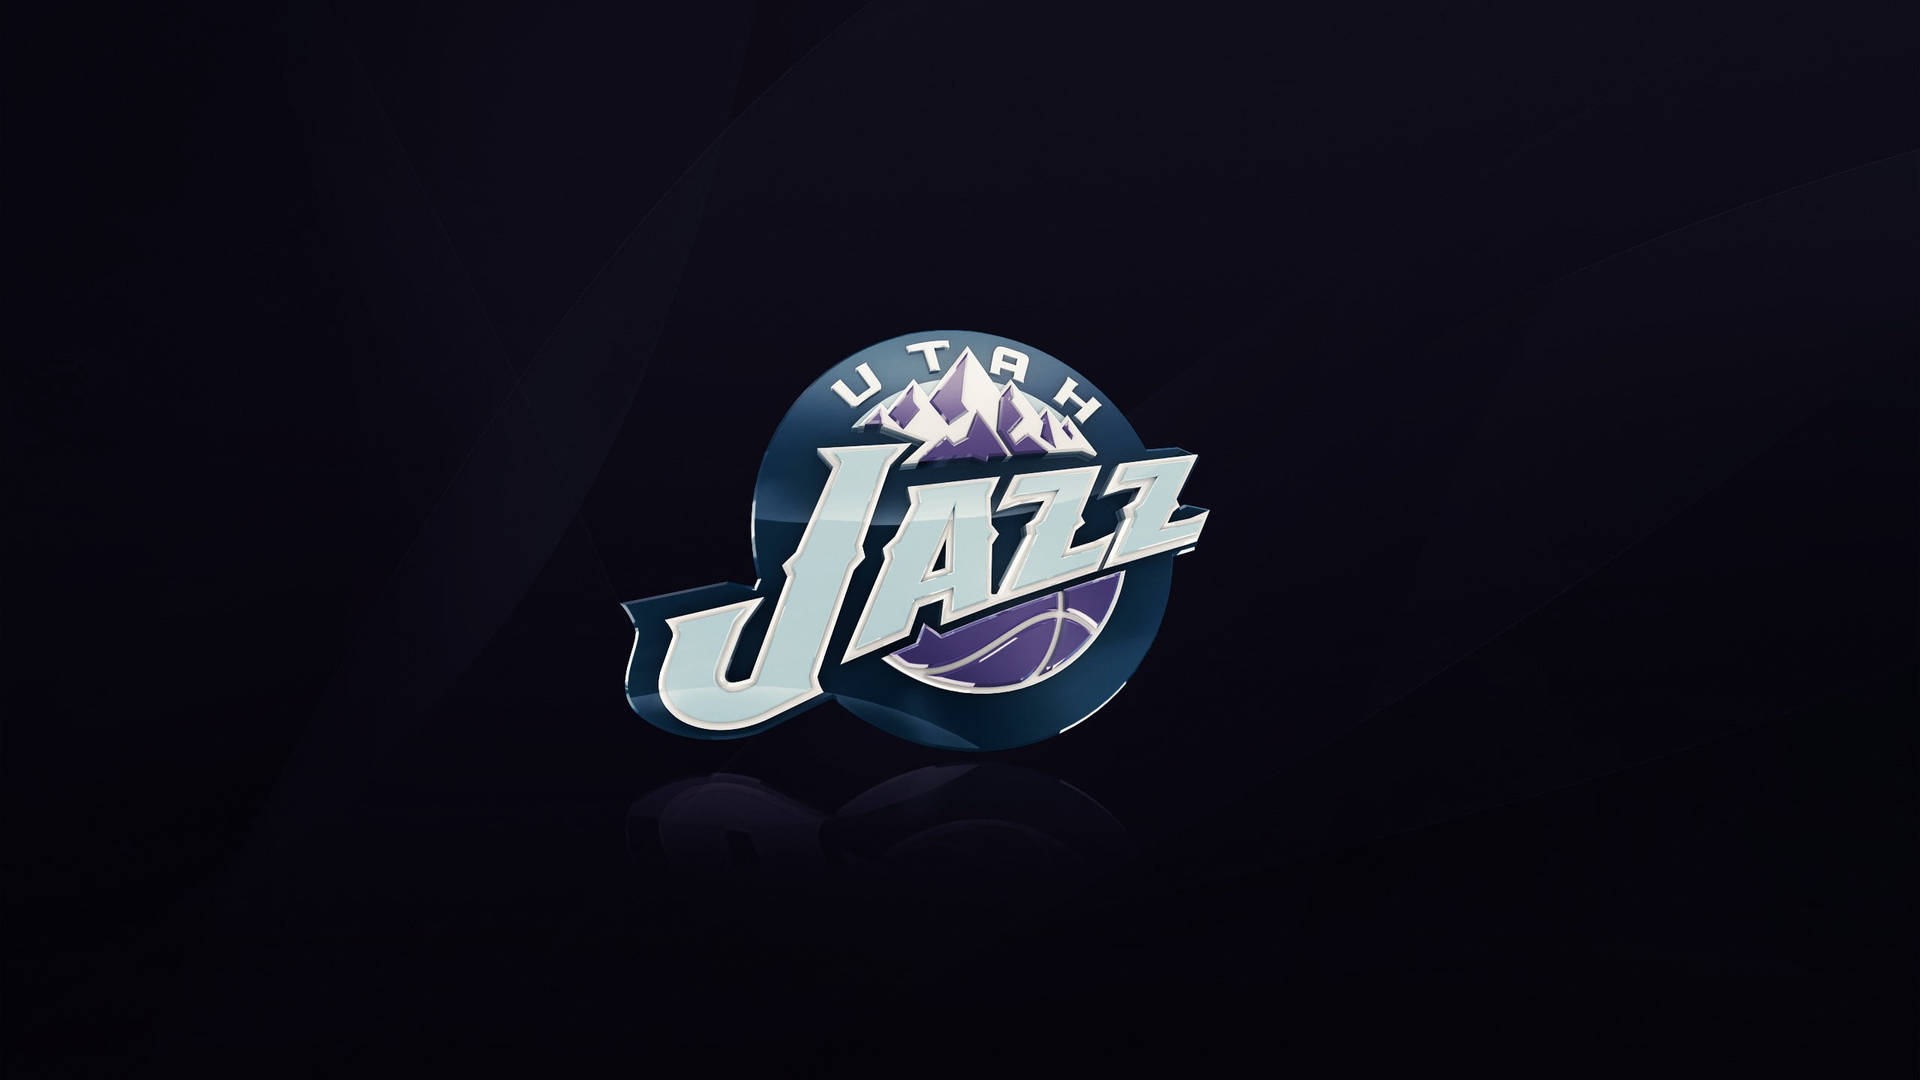 Free Utah Jazz Wallpaper Downloads, Utah Jazz Wallpaper for FREE